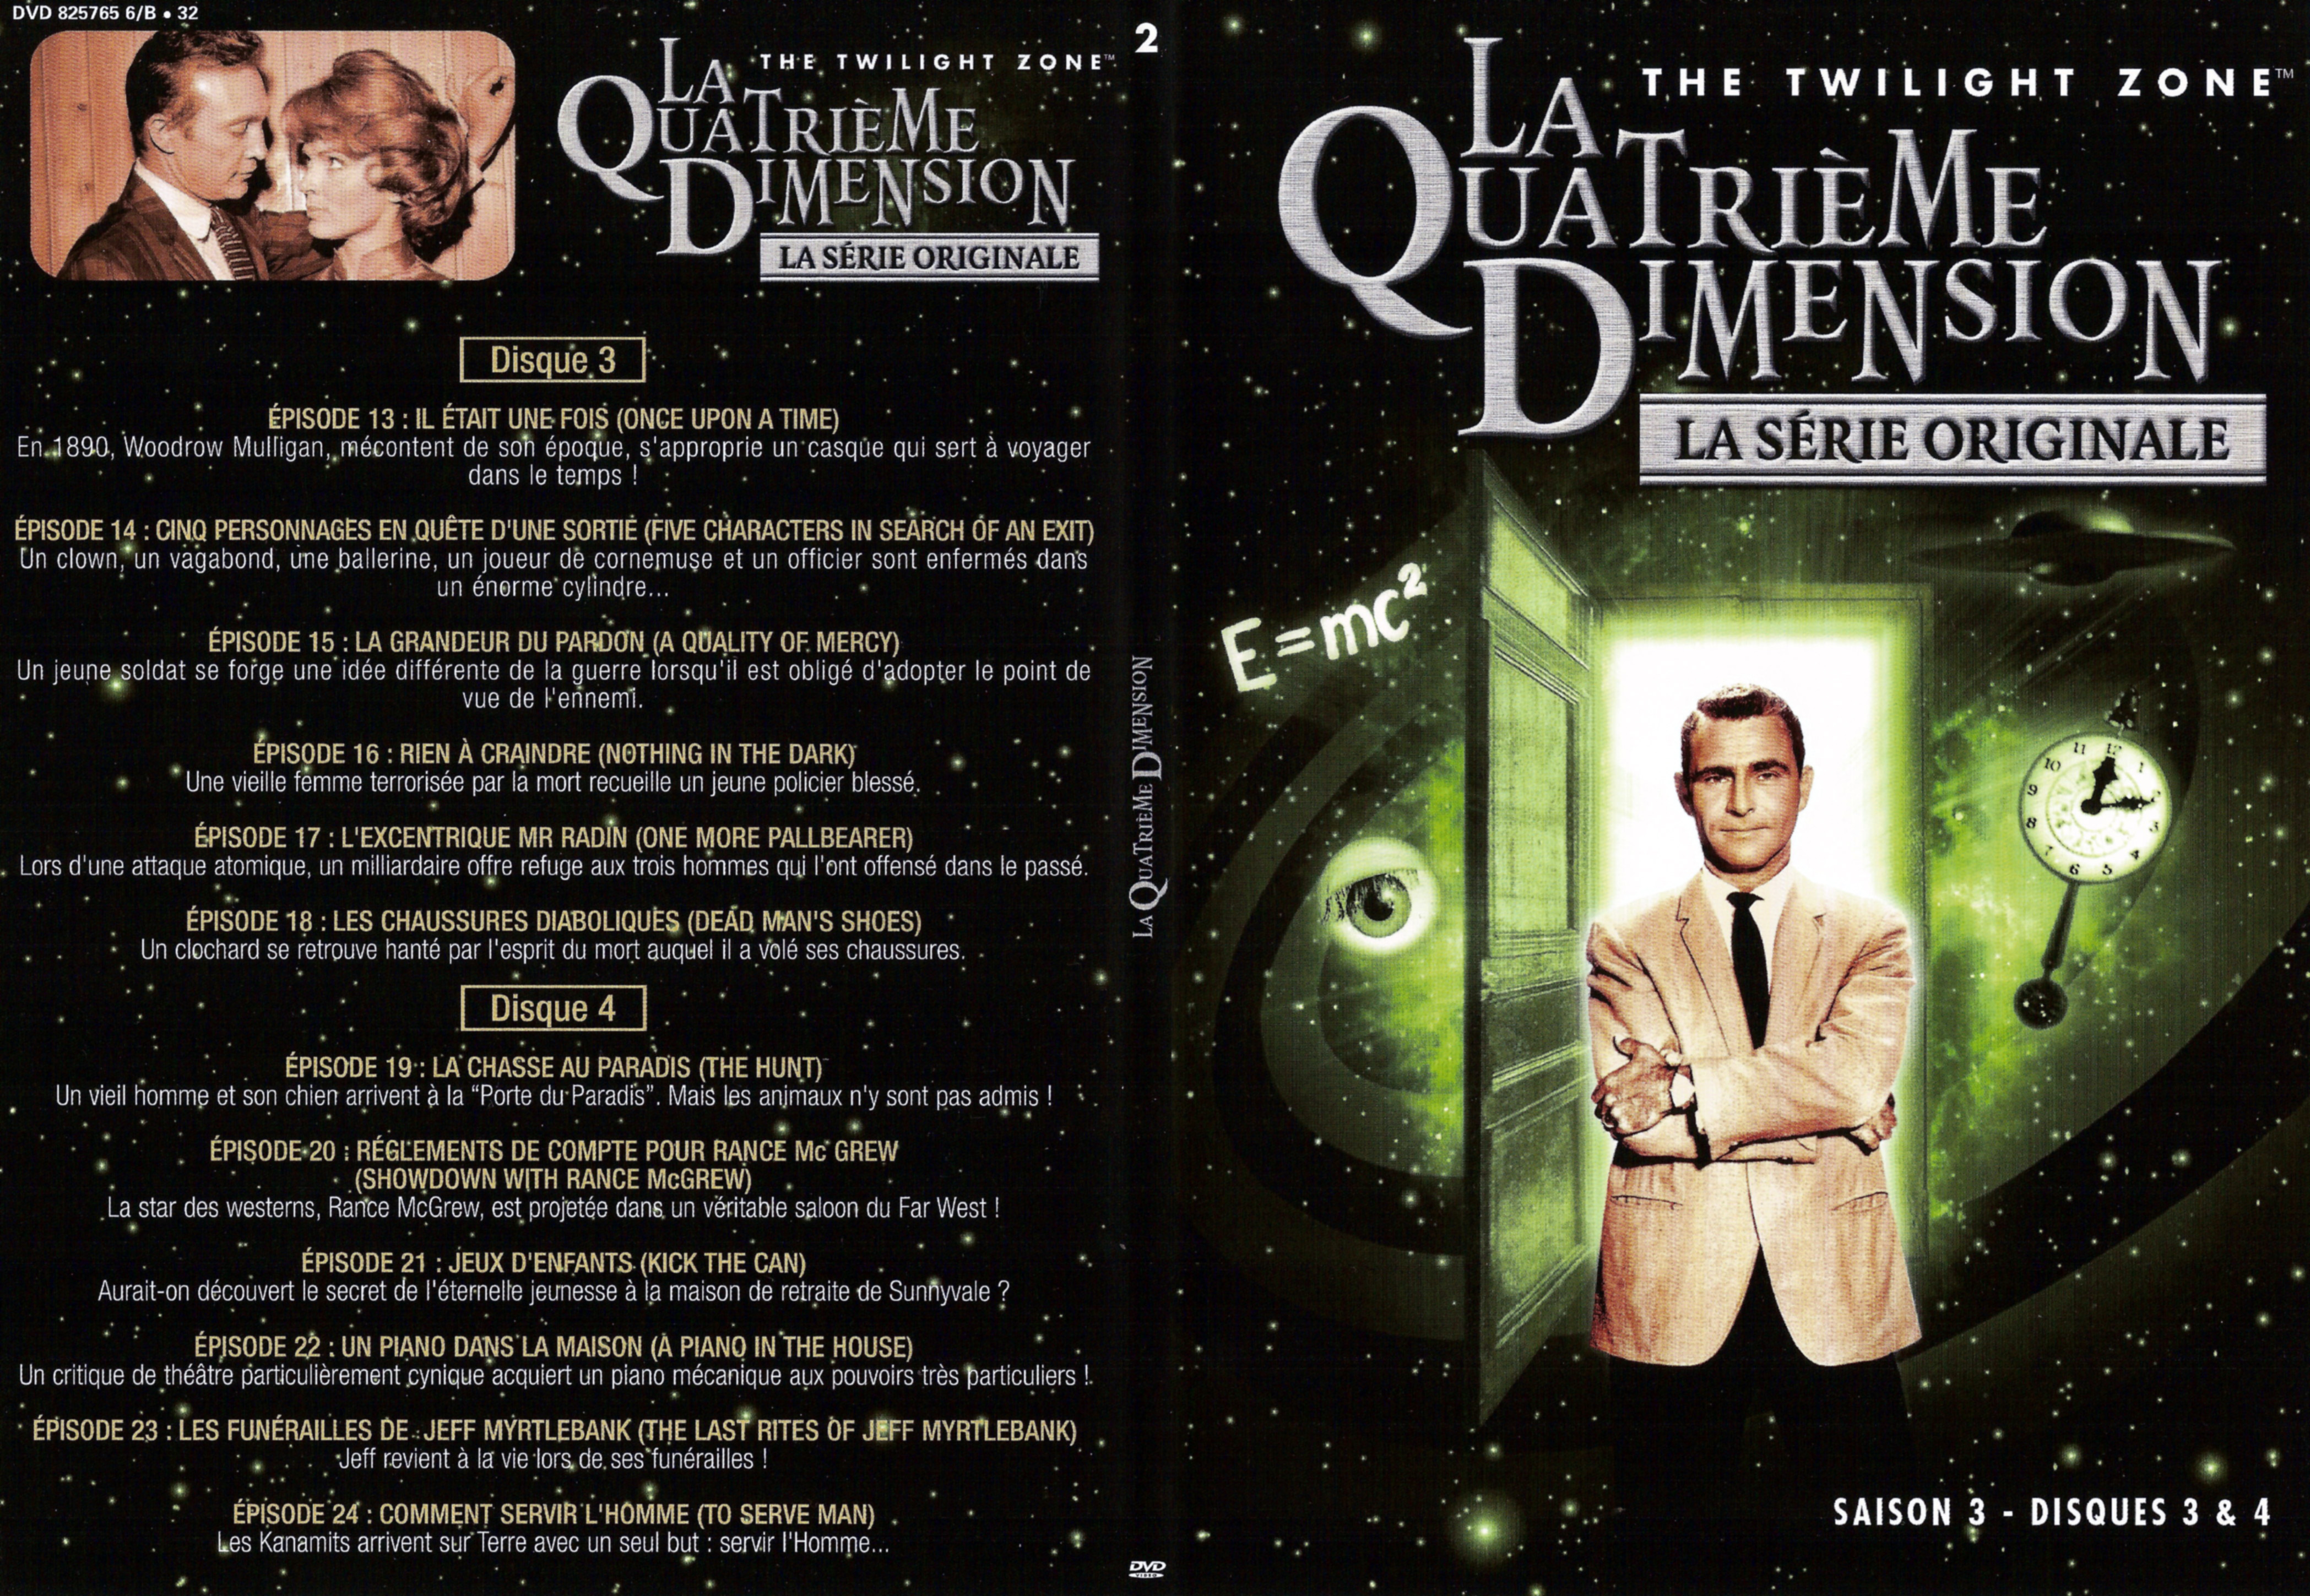 Jaquette DVD La quatrieme dimension Saison 3 vol 2